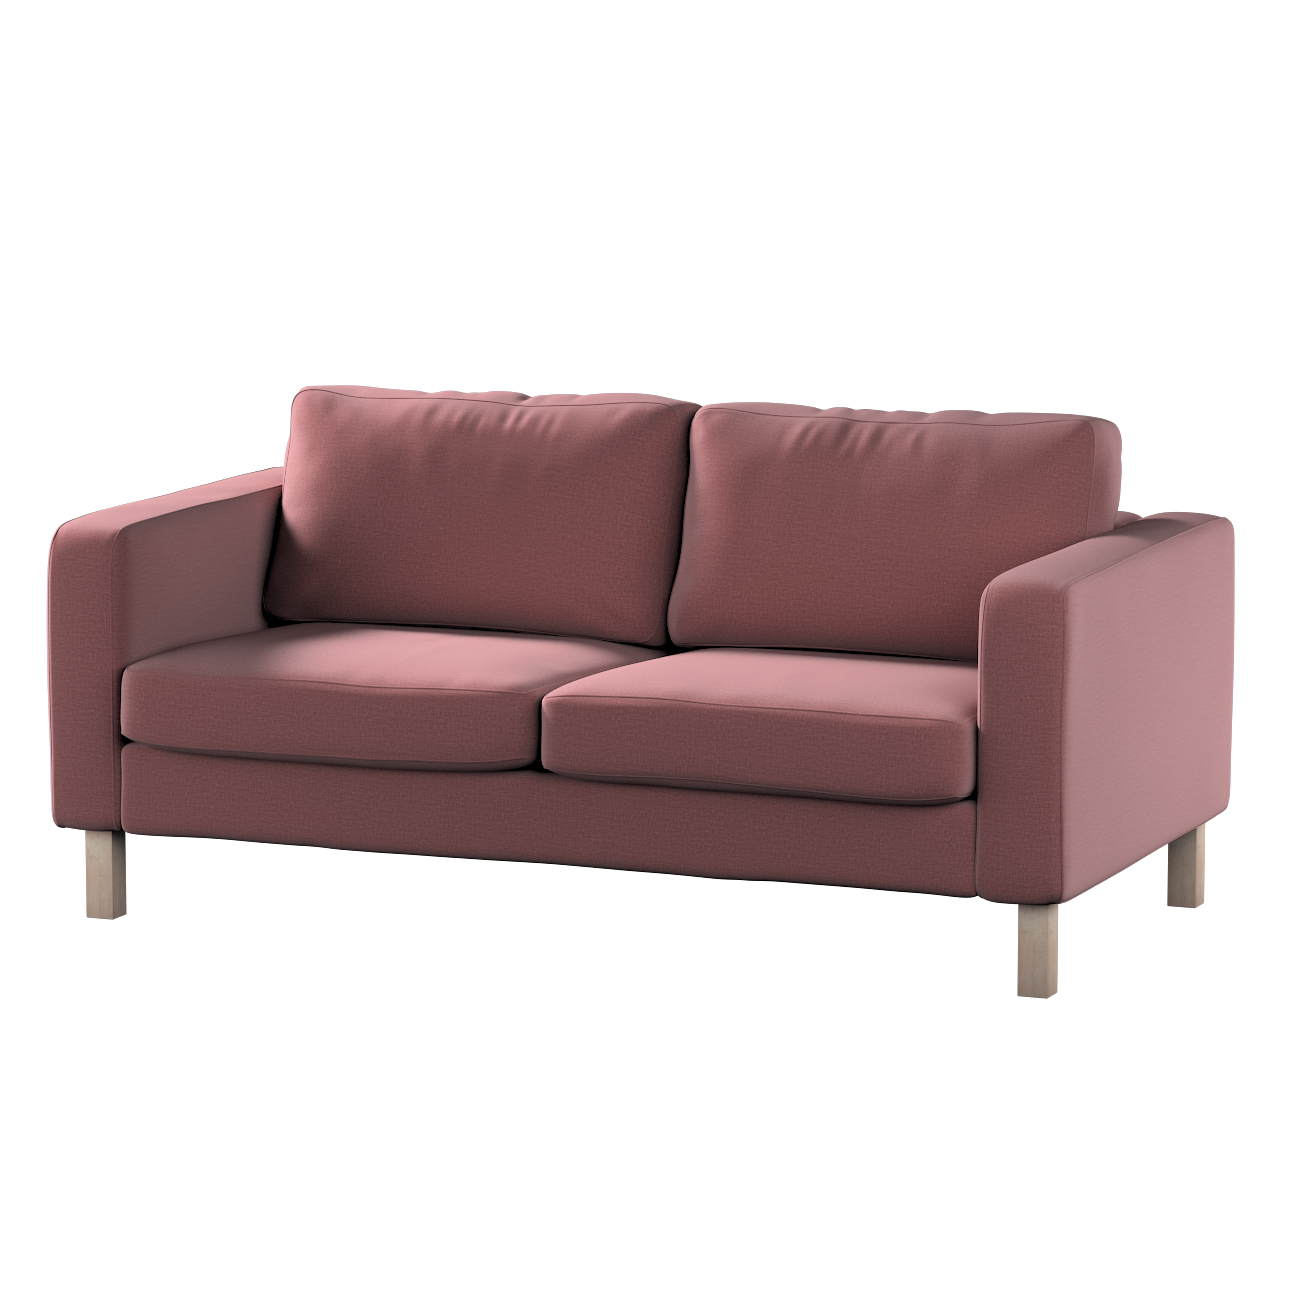 Bezug für Karlstad 2-Sitzer Sofa nicht ausklappbar, violett, Sofahusse, Kar günstig online kaufen